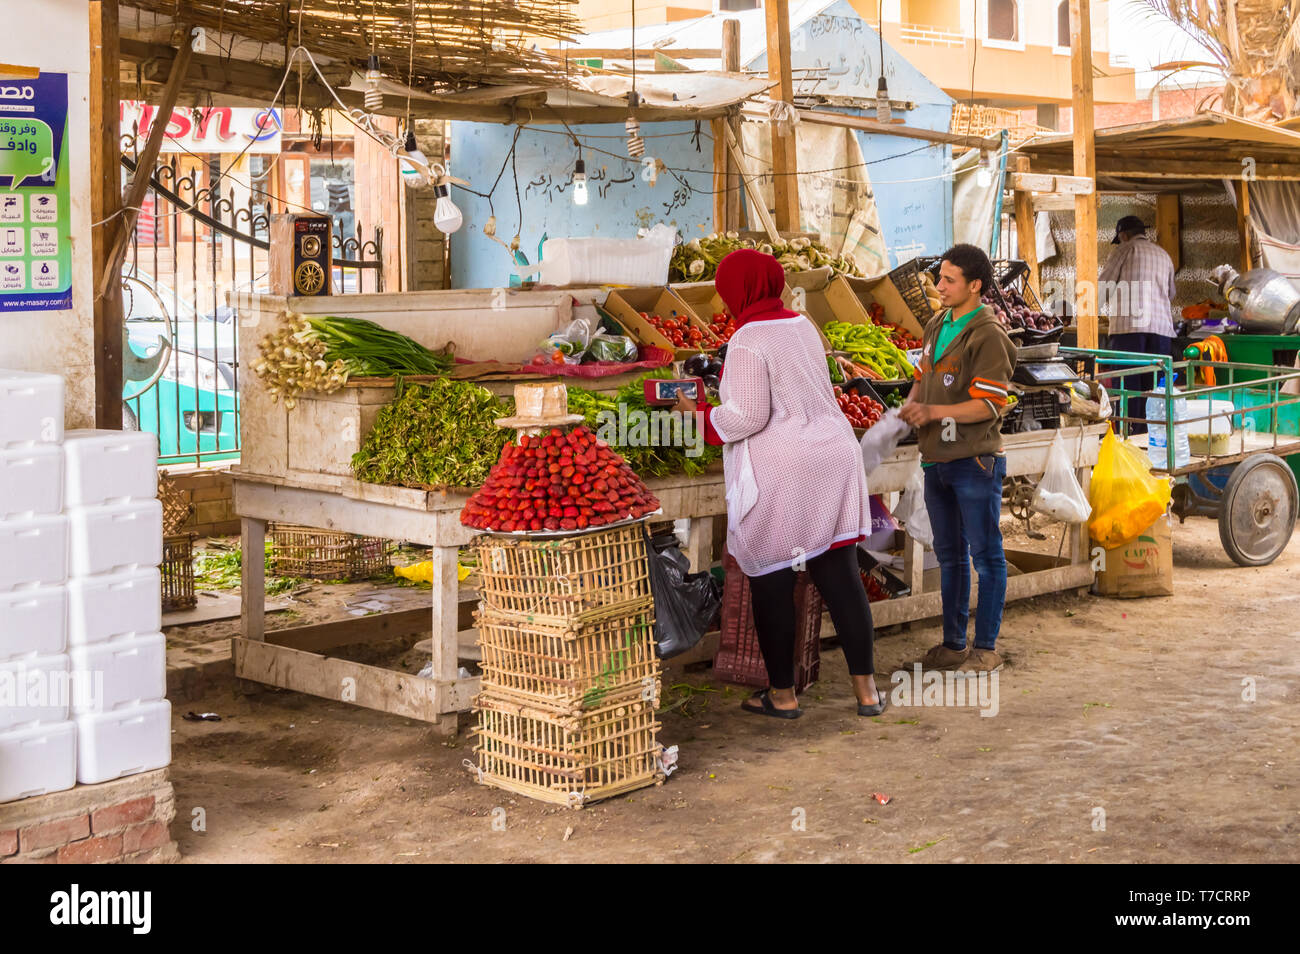 L'EGYPTE, Hurghada - 04 Avril 2019:Vendeur de fruits et légumes dans le vieux port de plaisance de la ville d'Hurghada, le long de la Mer Rouge en Egypte Banque D'Images